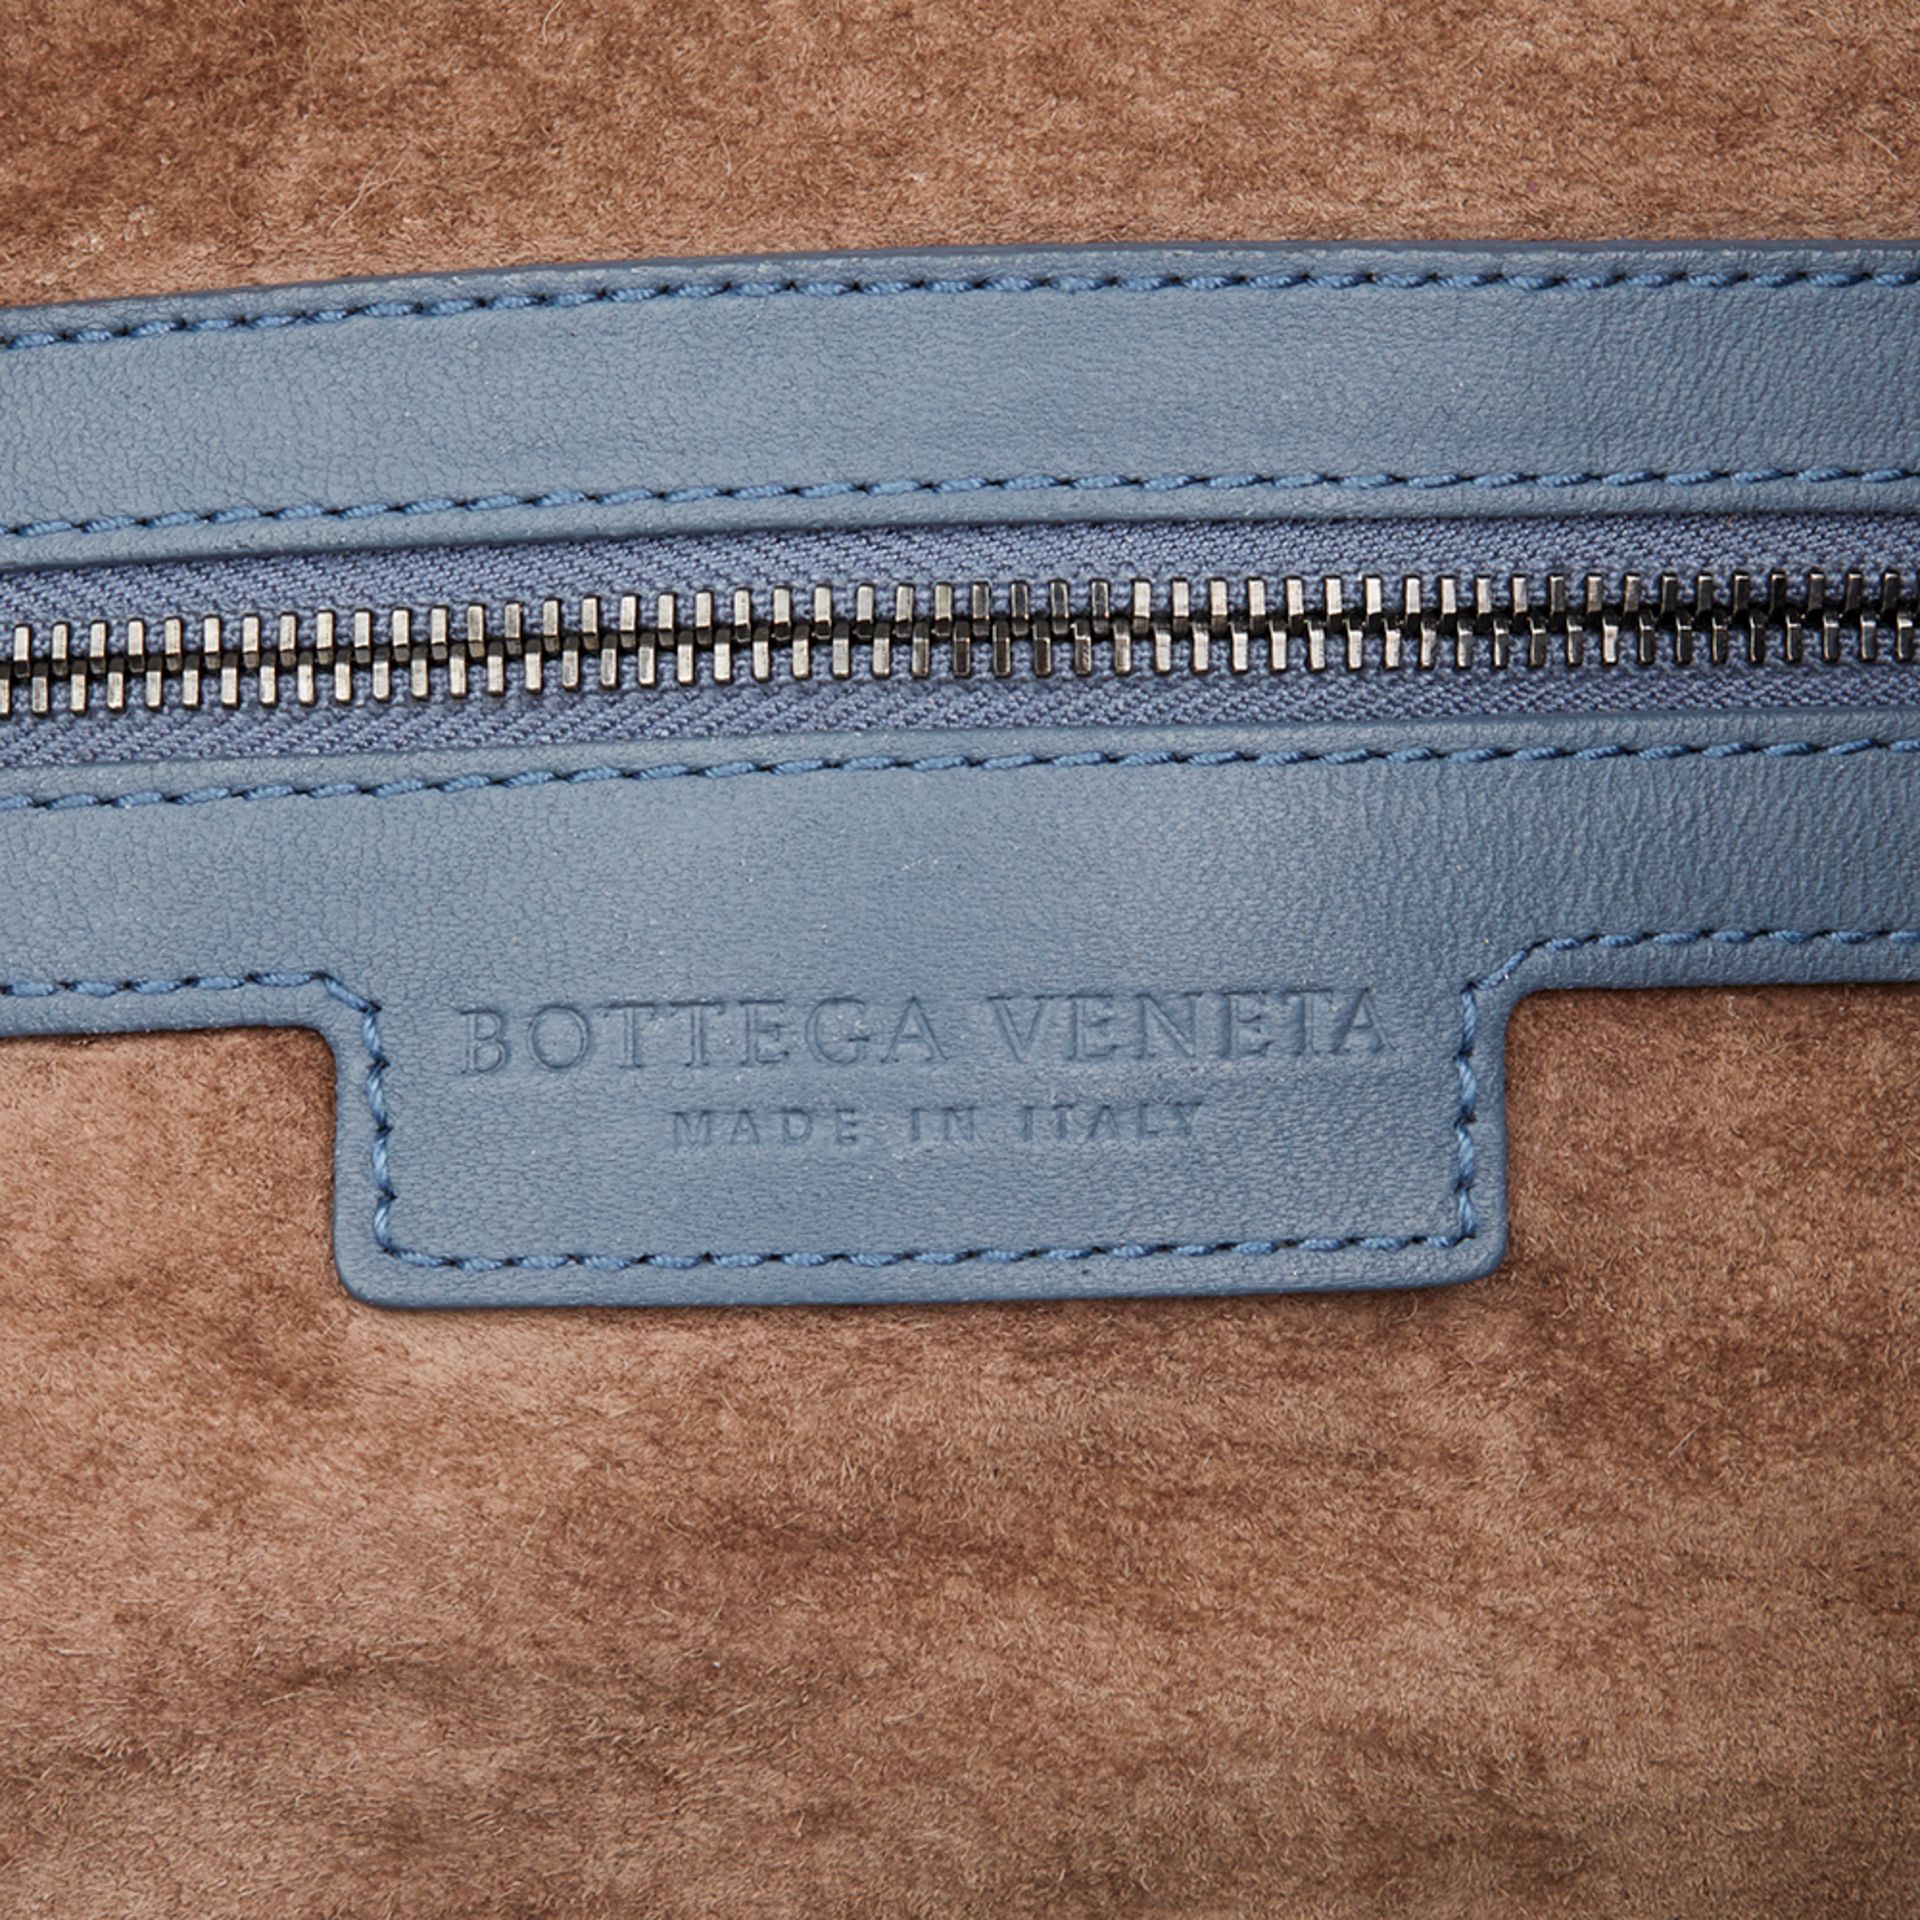 Bottega Veneta Tourmaline Woven Lambskin Medium Veneta Bag - Image 7 of 10